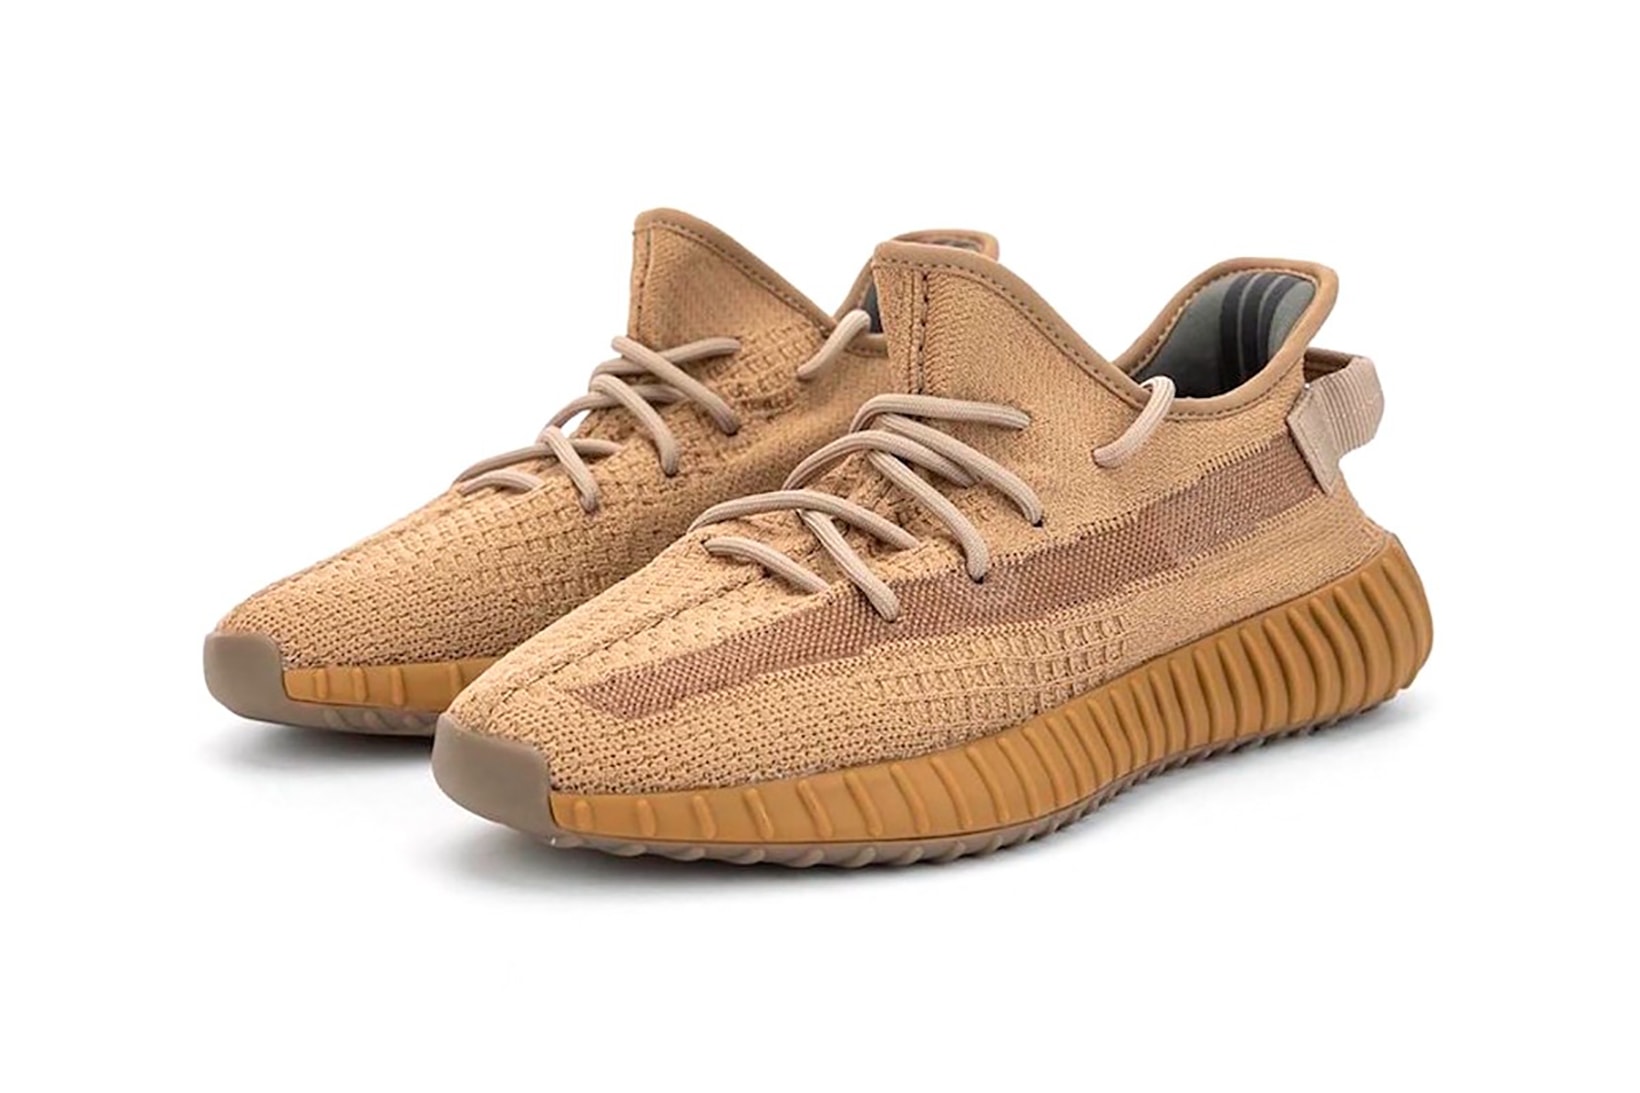 adidas kanye west yeezy boost 350 v2 cinder marsh sneakers footwear sneakerhead